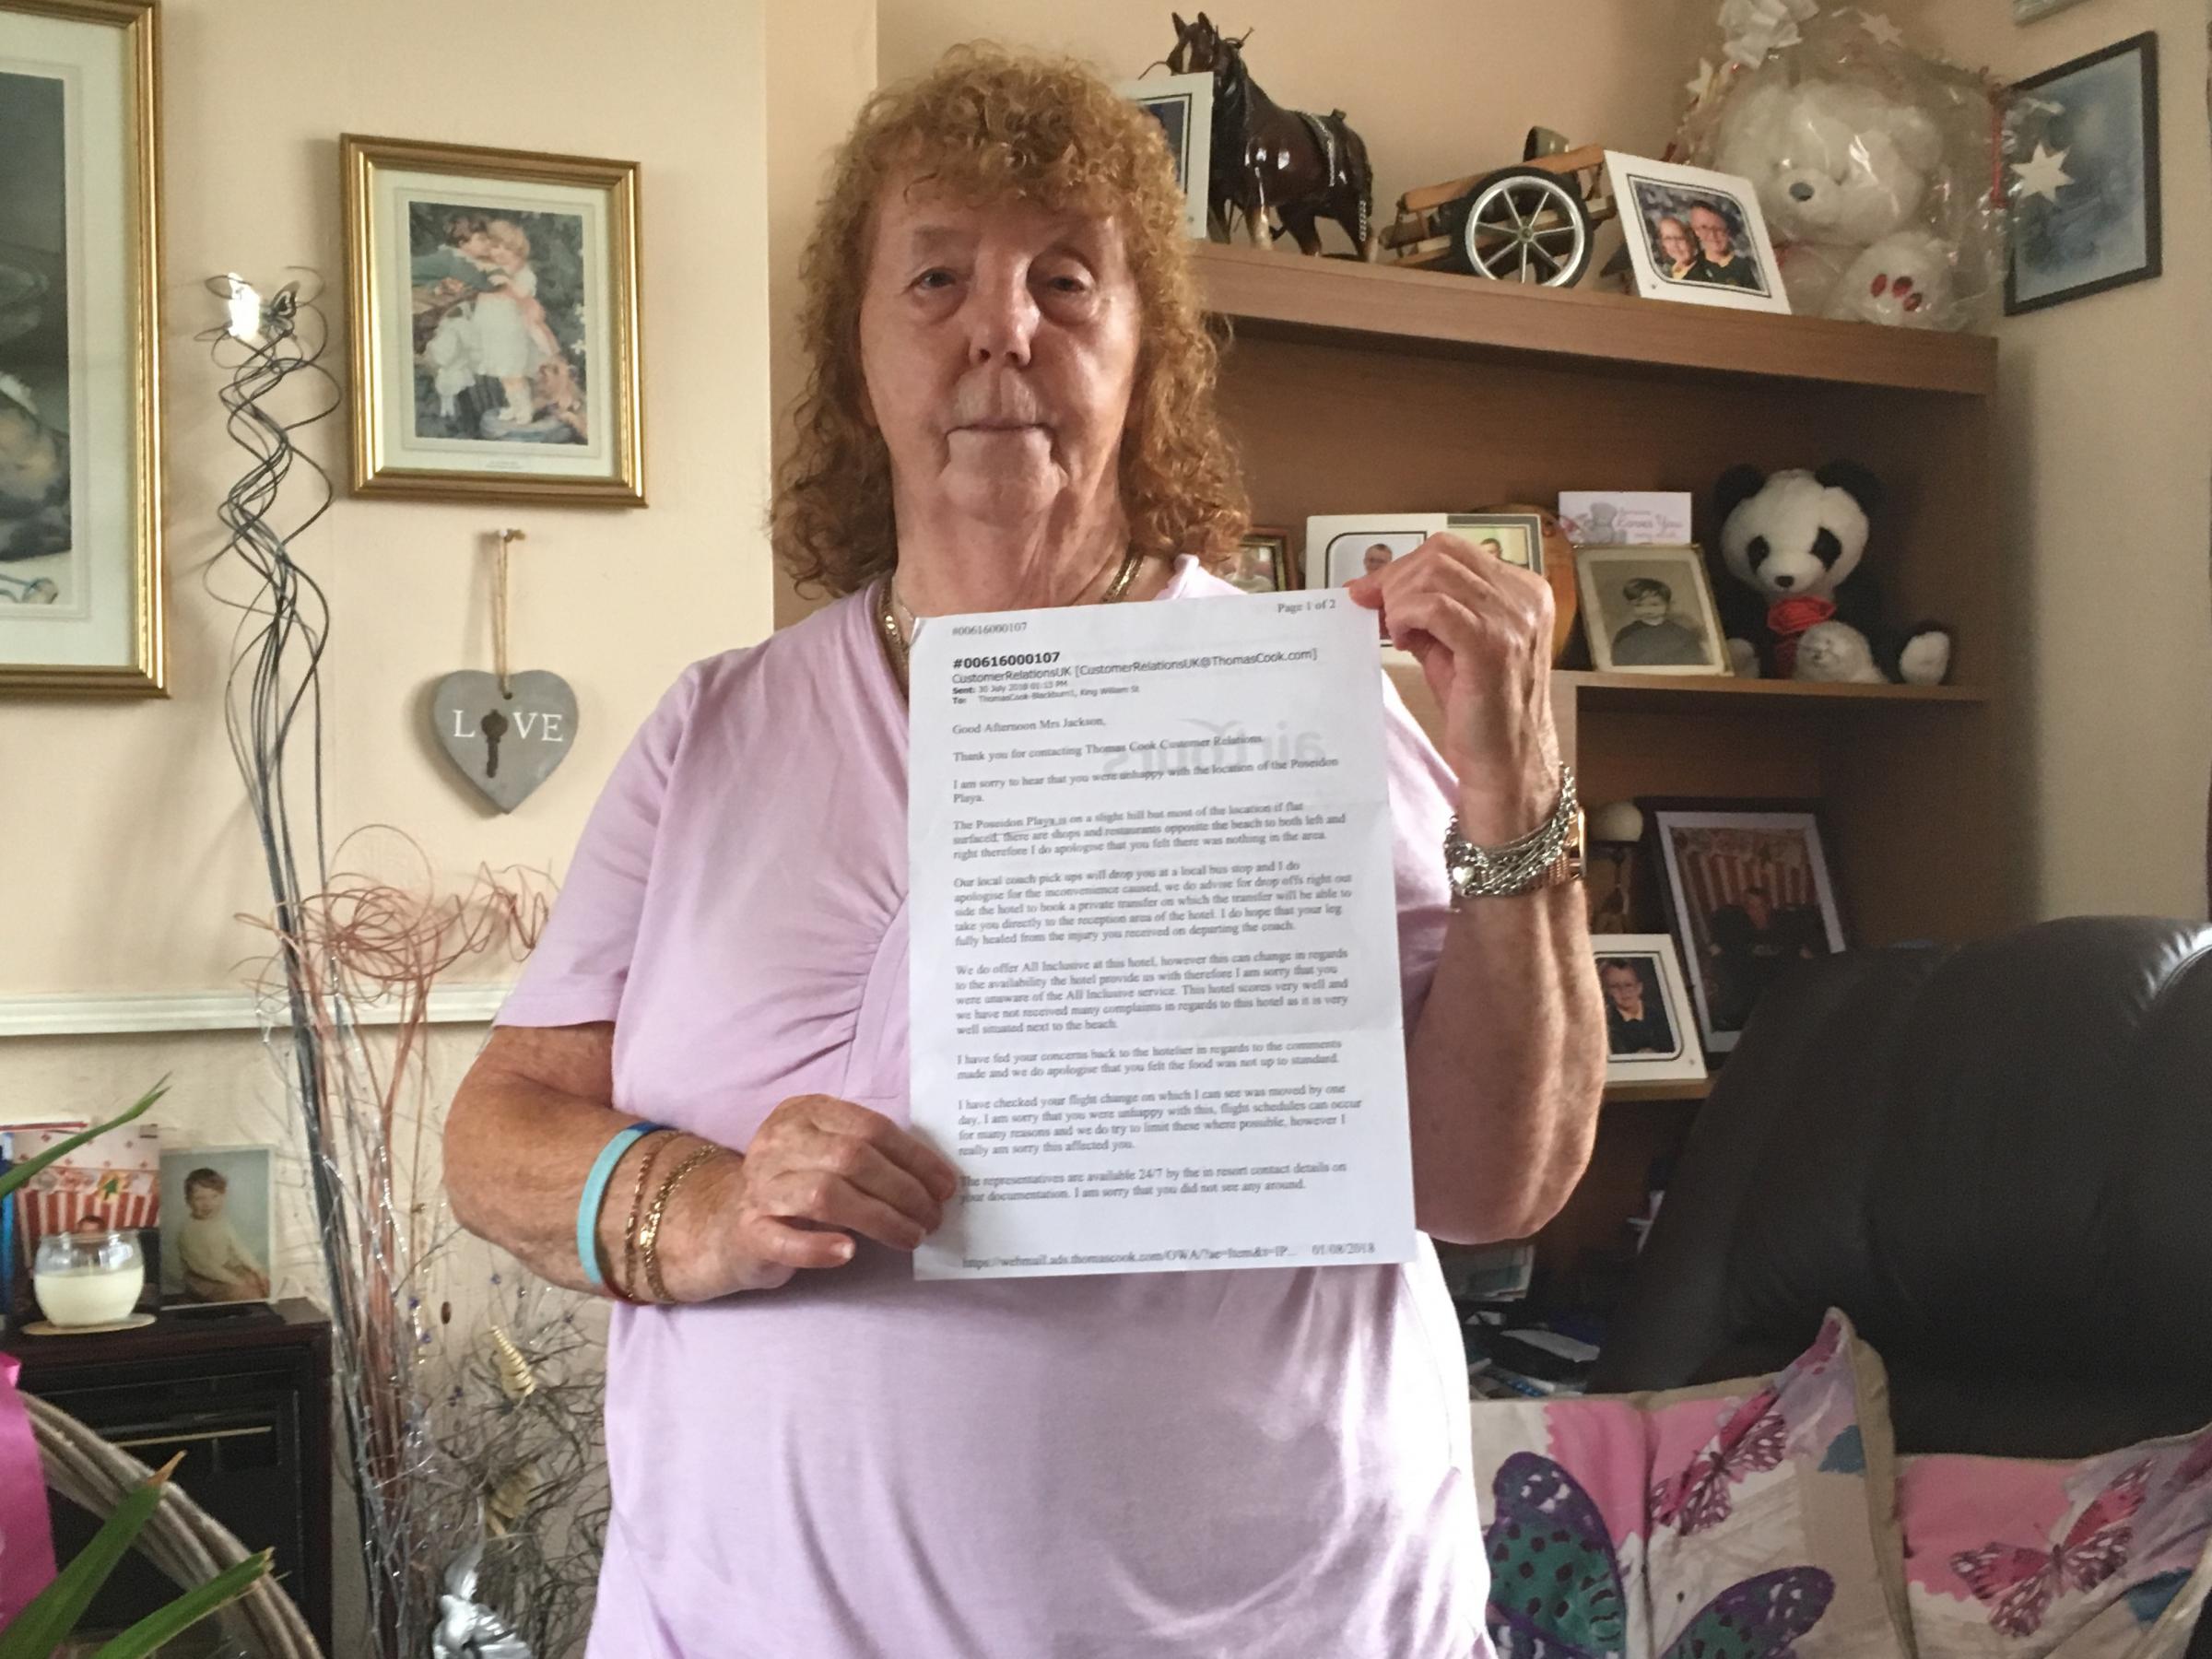 Grandma, 81, hits out at Thomas Cook for 'disaster' Benidorm holiday